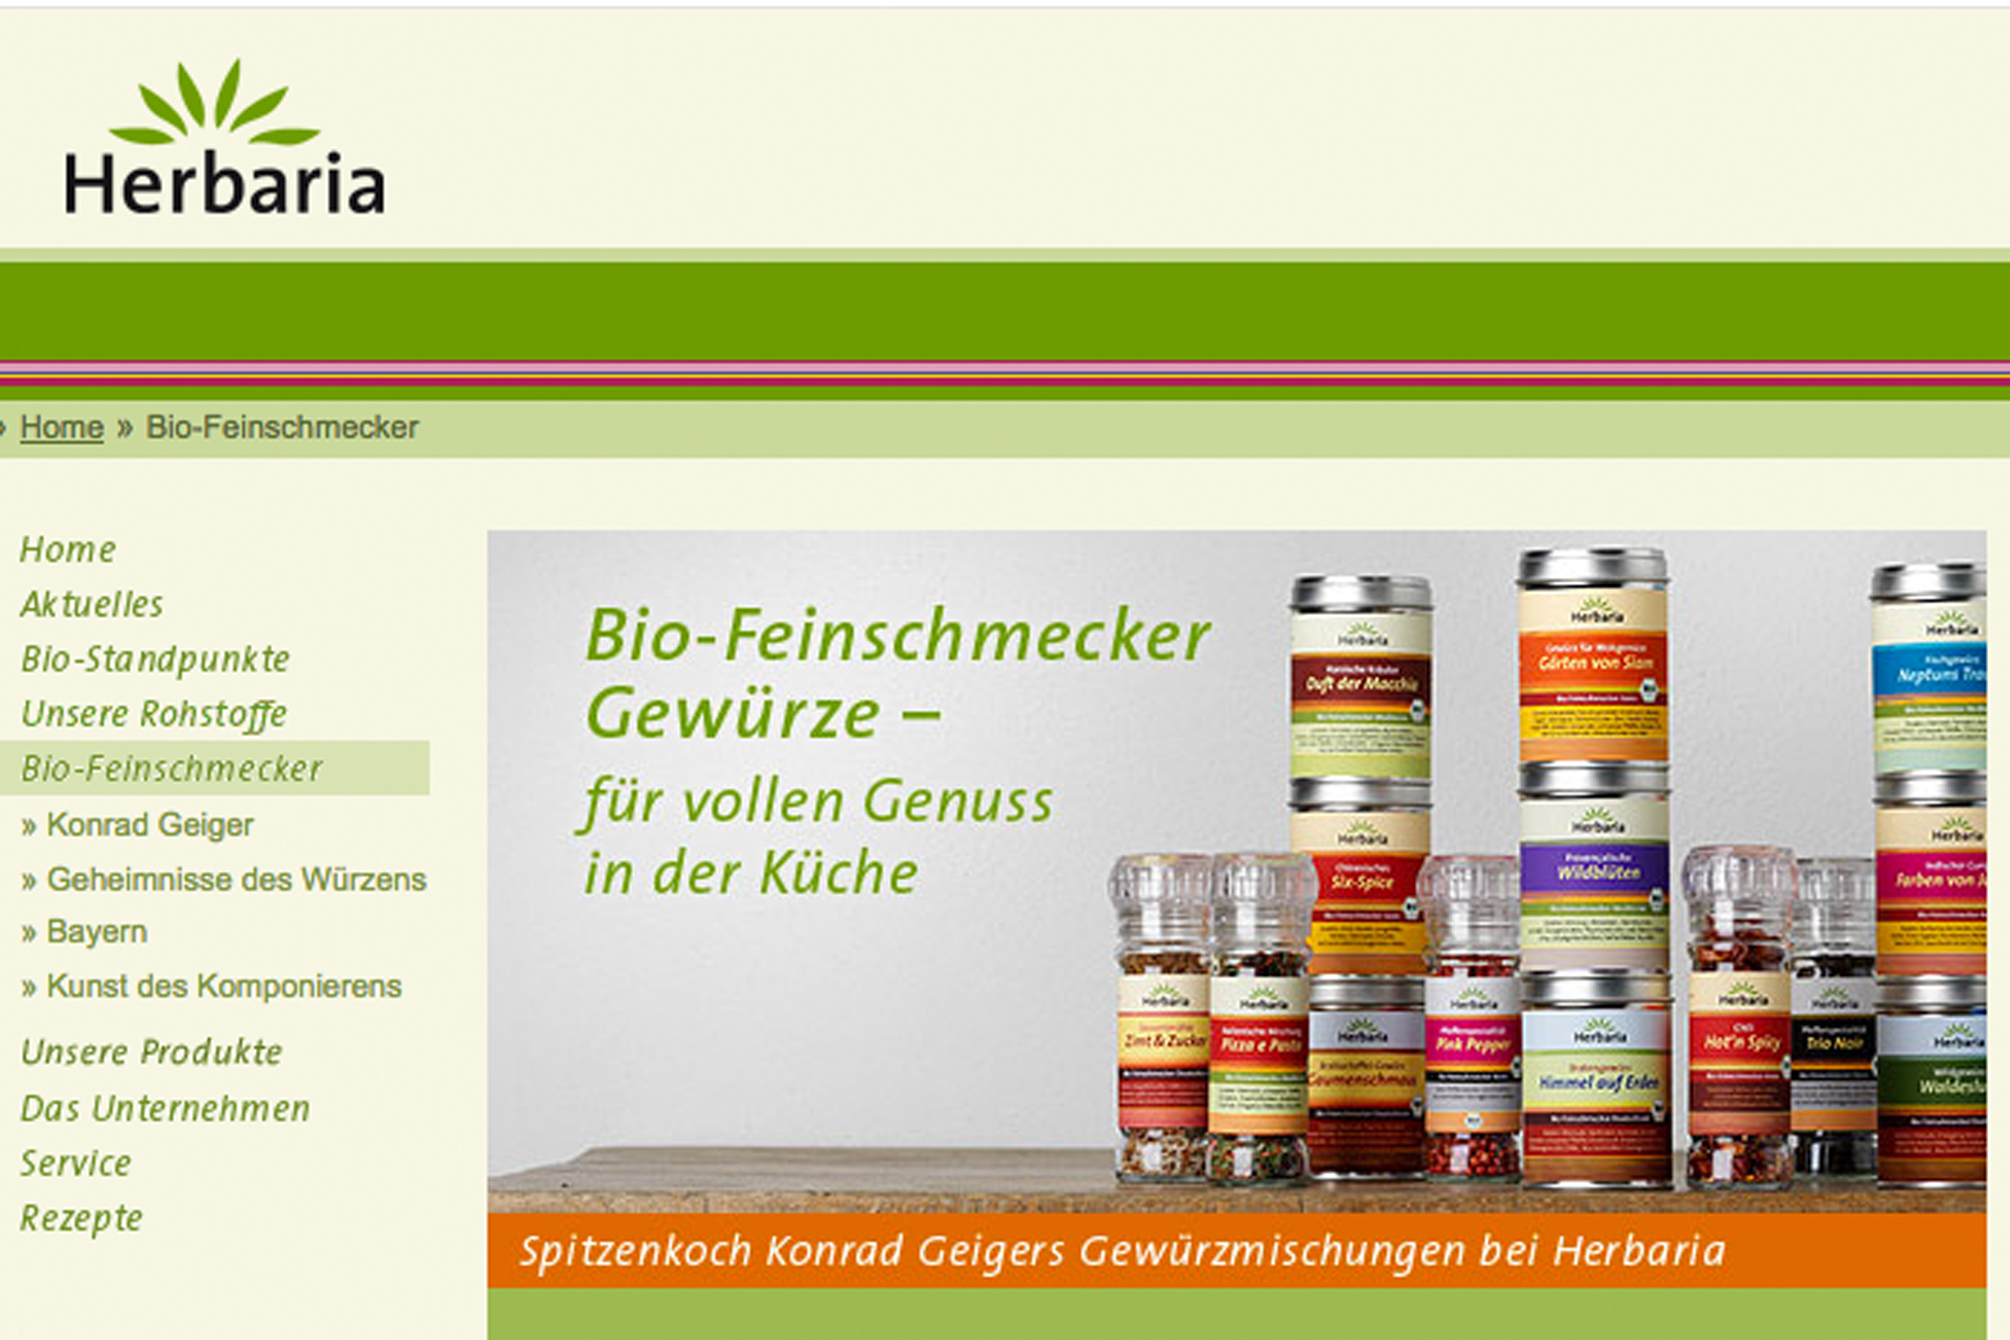 Bio-Feinschmecker Gewürze von Herbaria